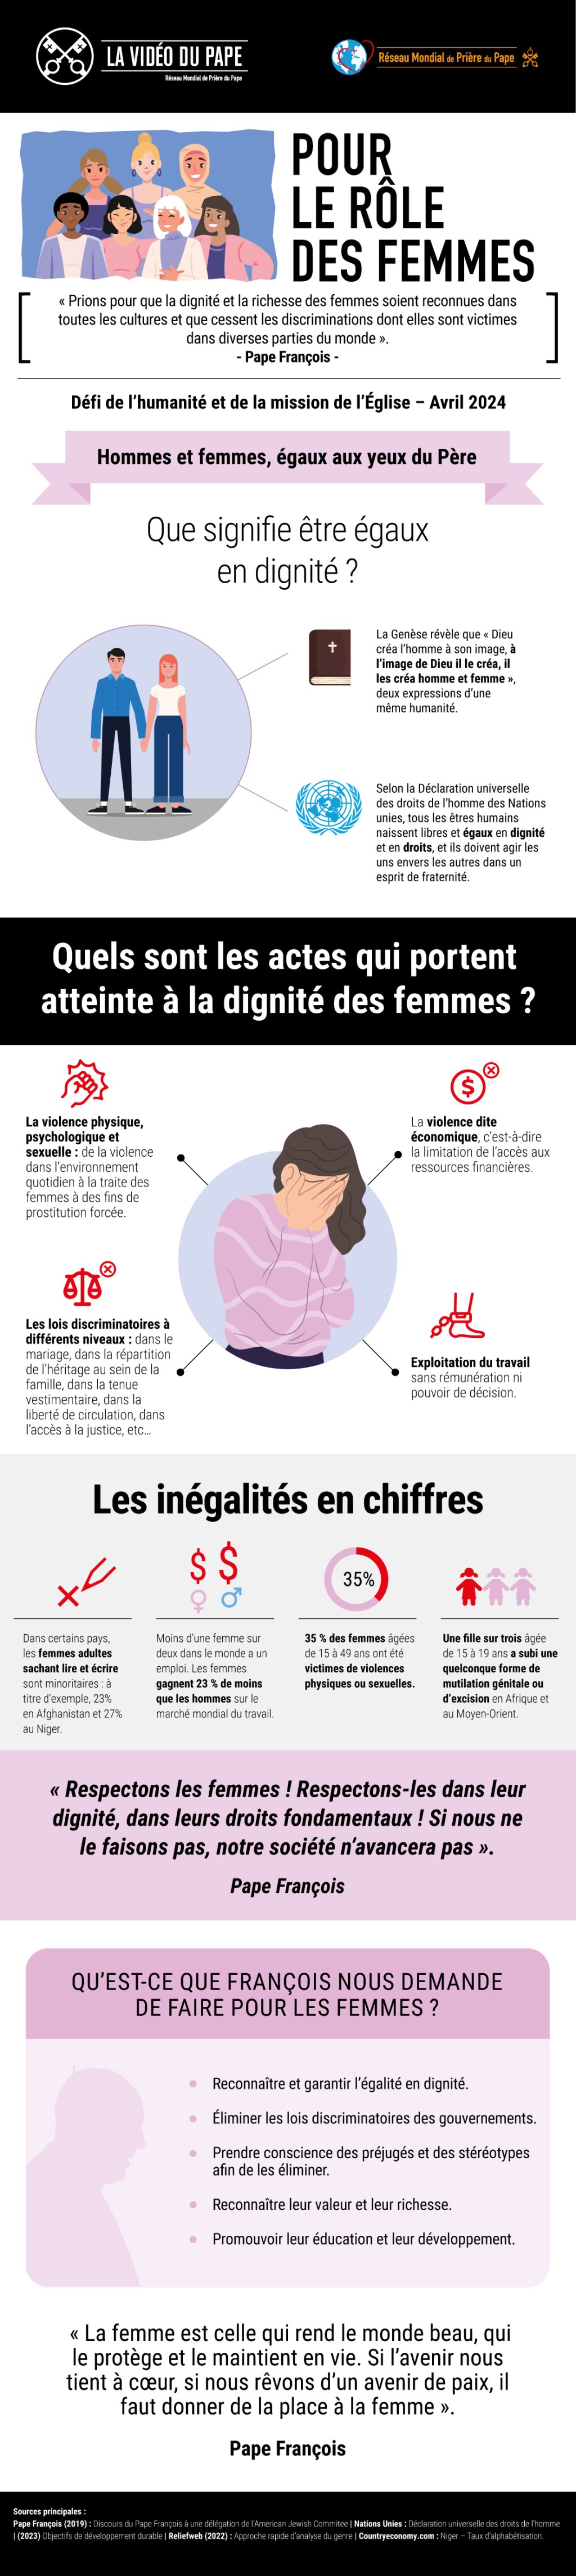 Infographic-TPV-4-2024-FR-Pour-le-role-des-femmes